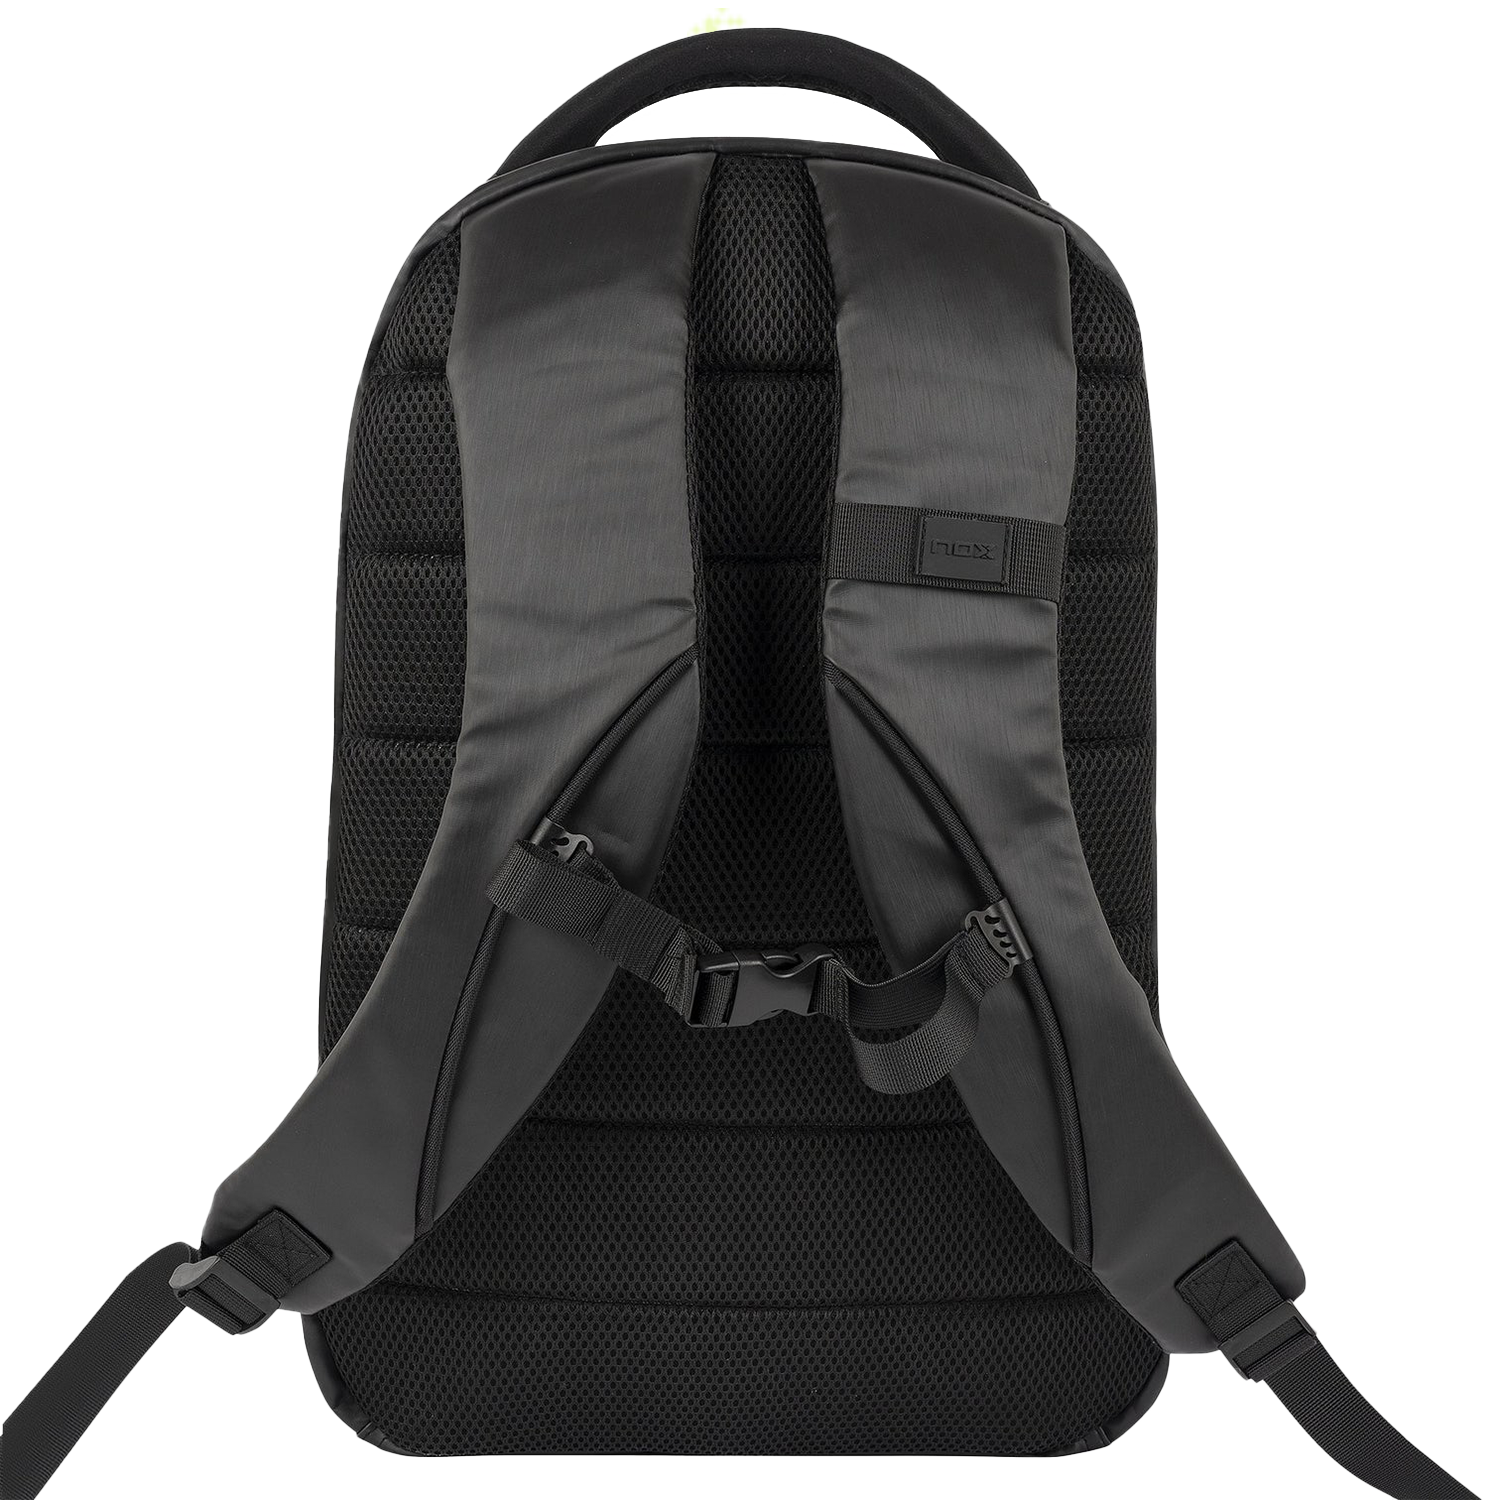 NOX Black Pro Series Backpack